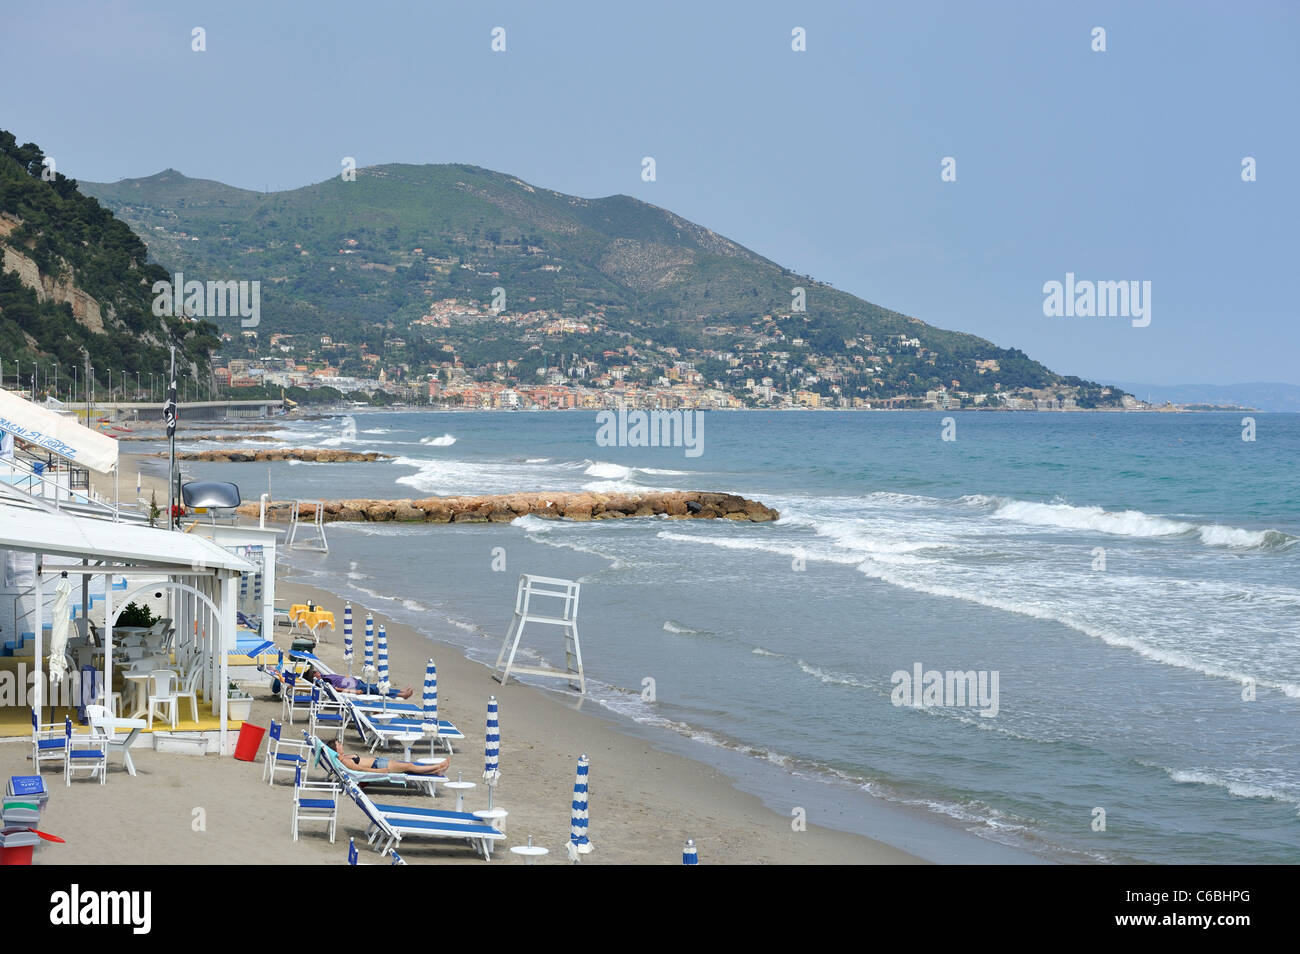 La spiaggia di Laigueglia Italia Liguria sulla Riviera Italiana guardando in direzione di Alassio. Foto Stock